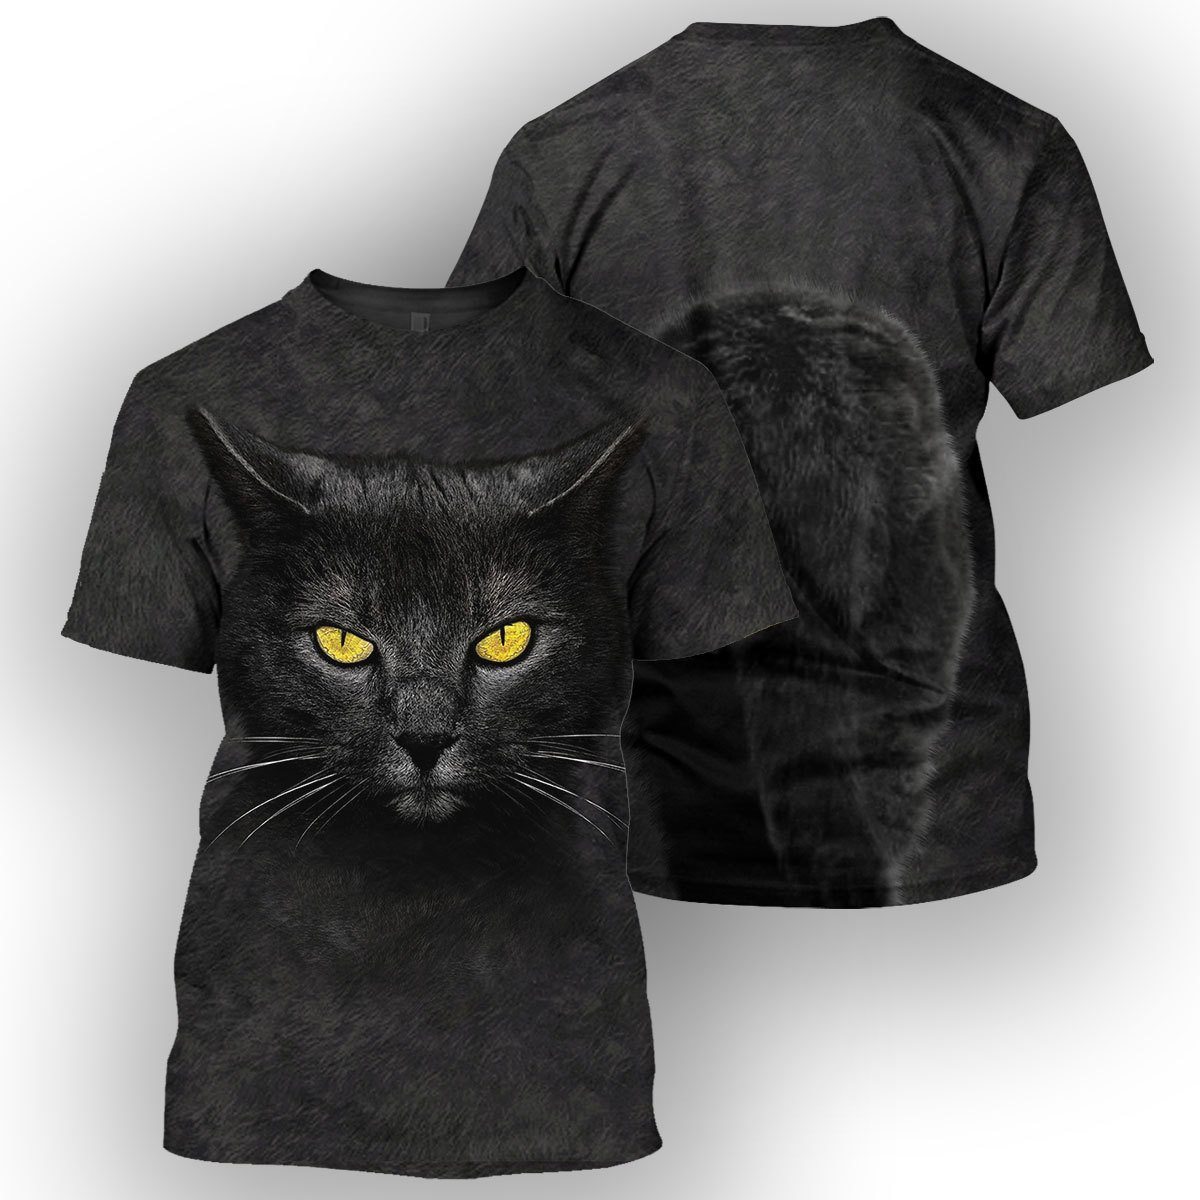 Gearhumans Black Cat - 3D All Over Printed Shirt ZG-ZHD31082002 3D Apparel T-SHIRT S 